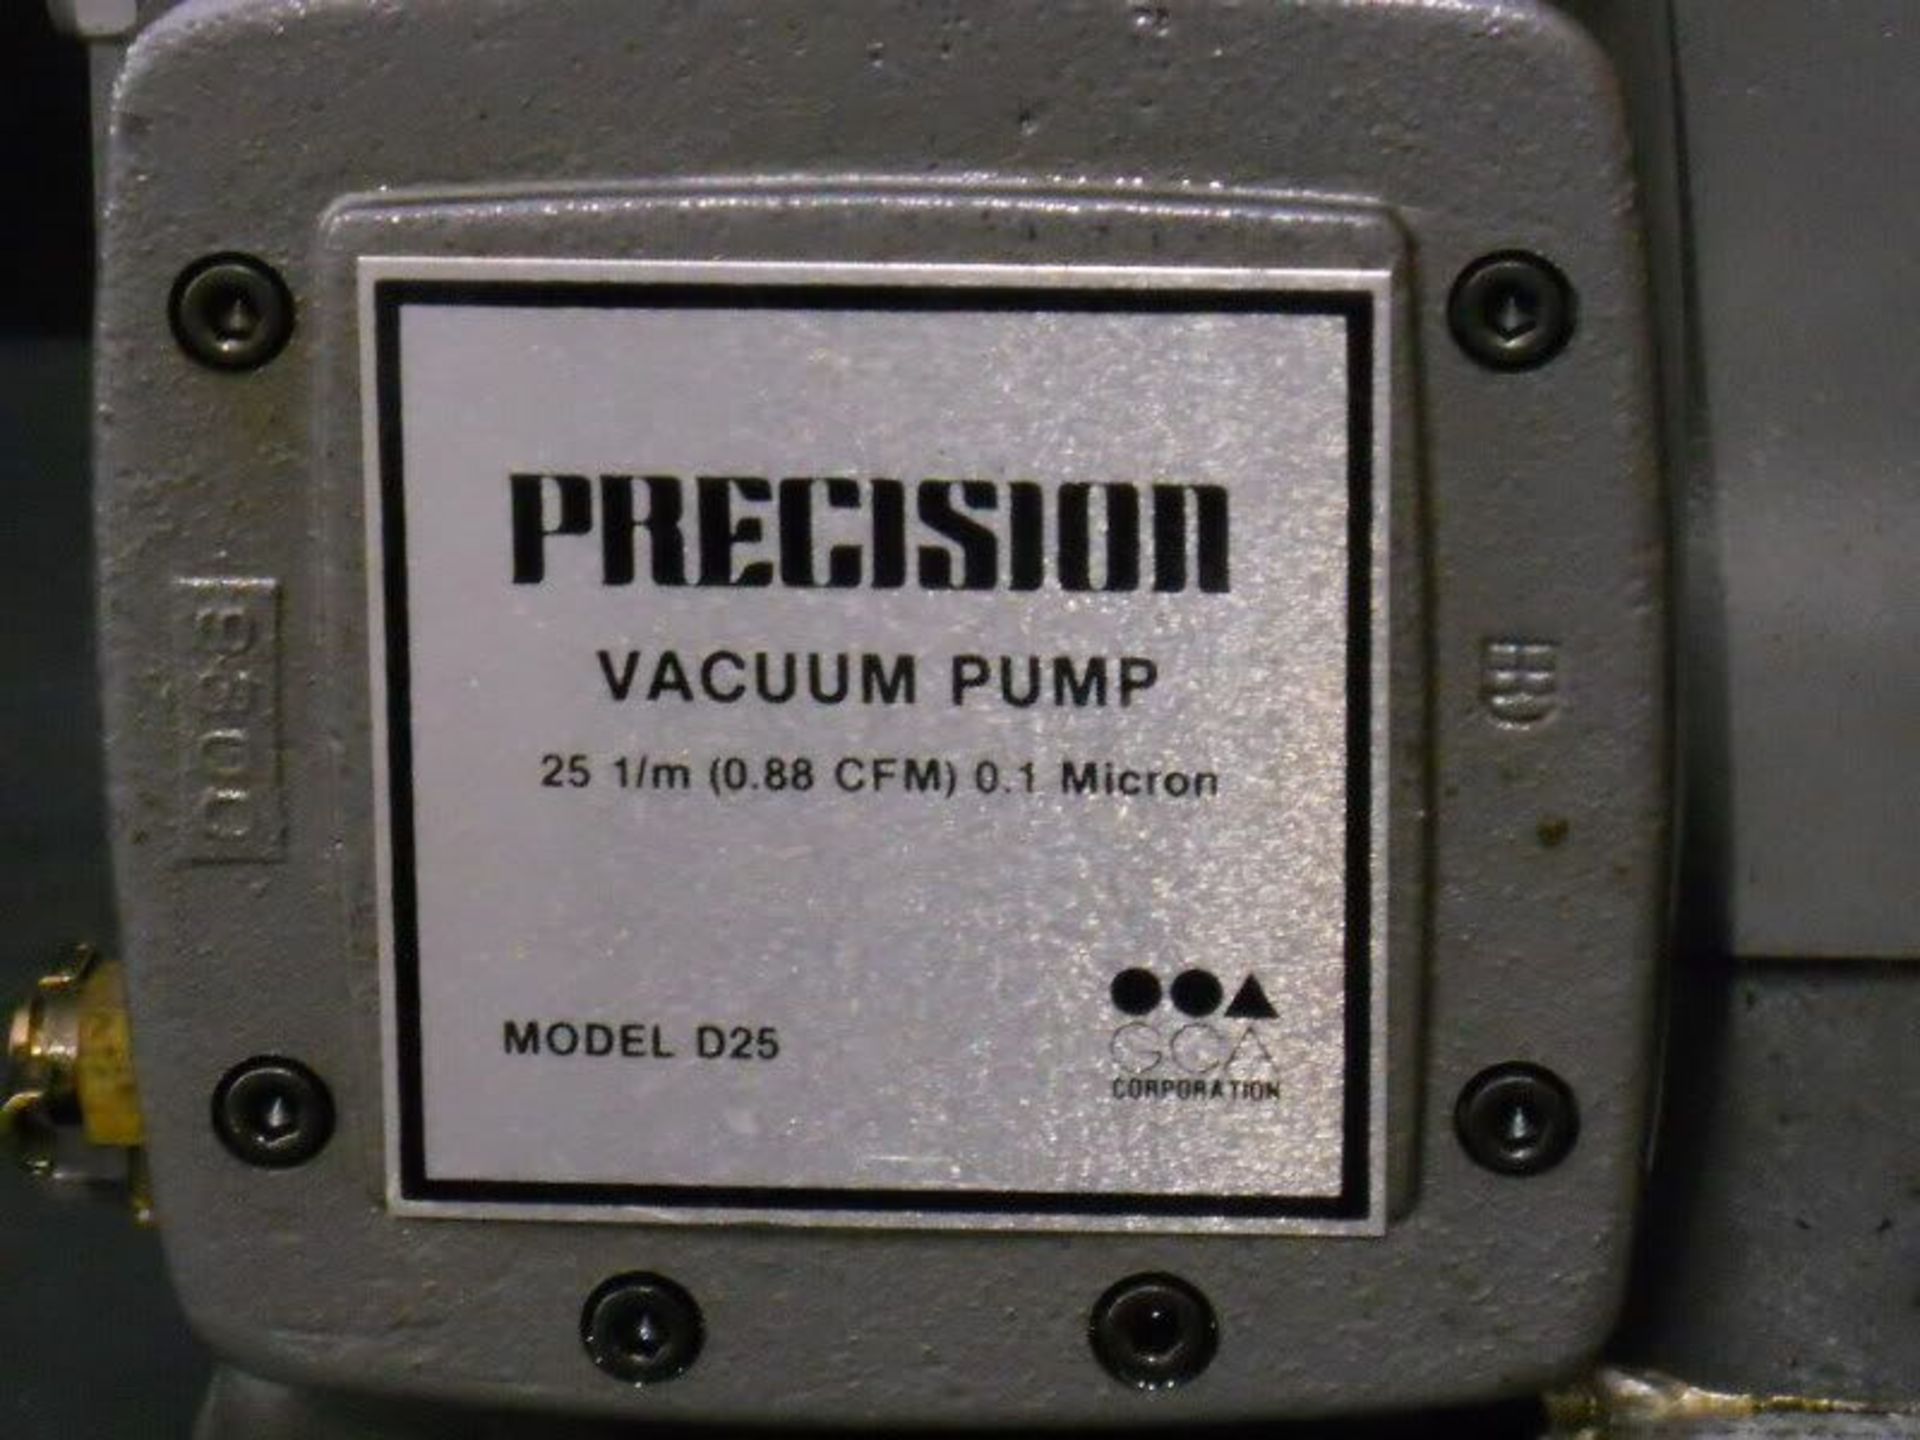 Precision Vacuum Pump Model D25, Qty 1, 330783248901 - Image 2 of 7